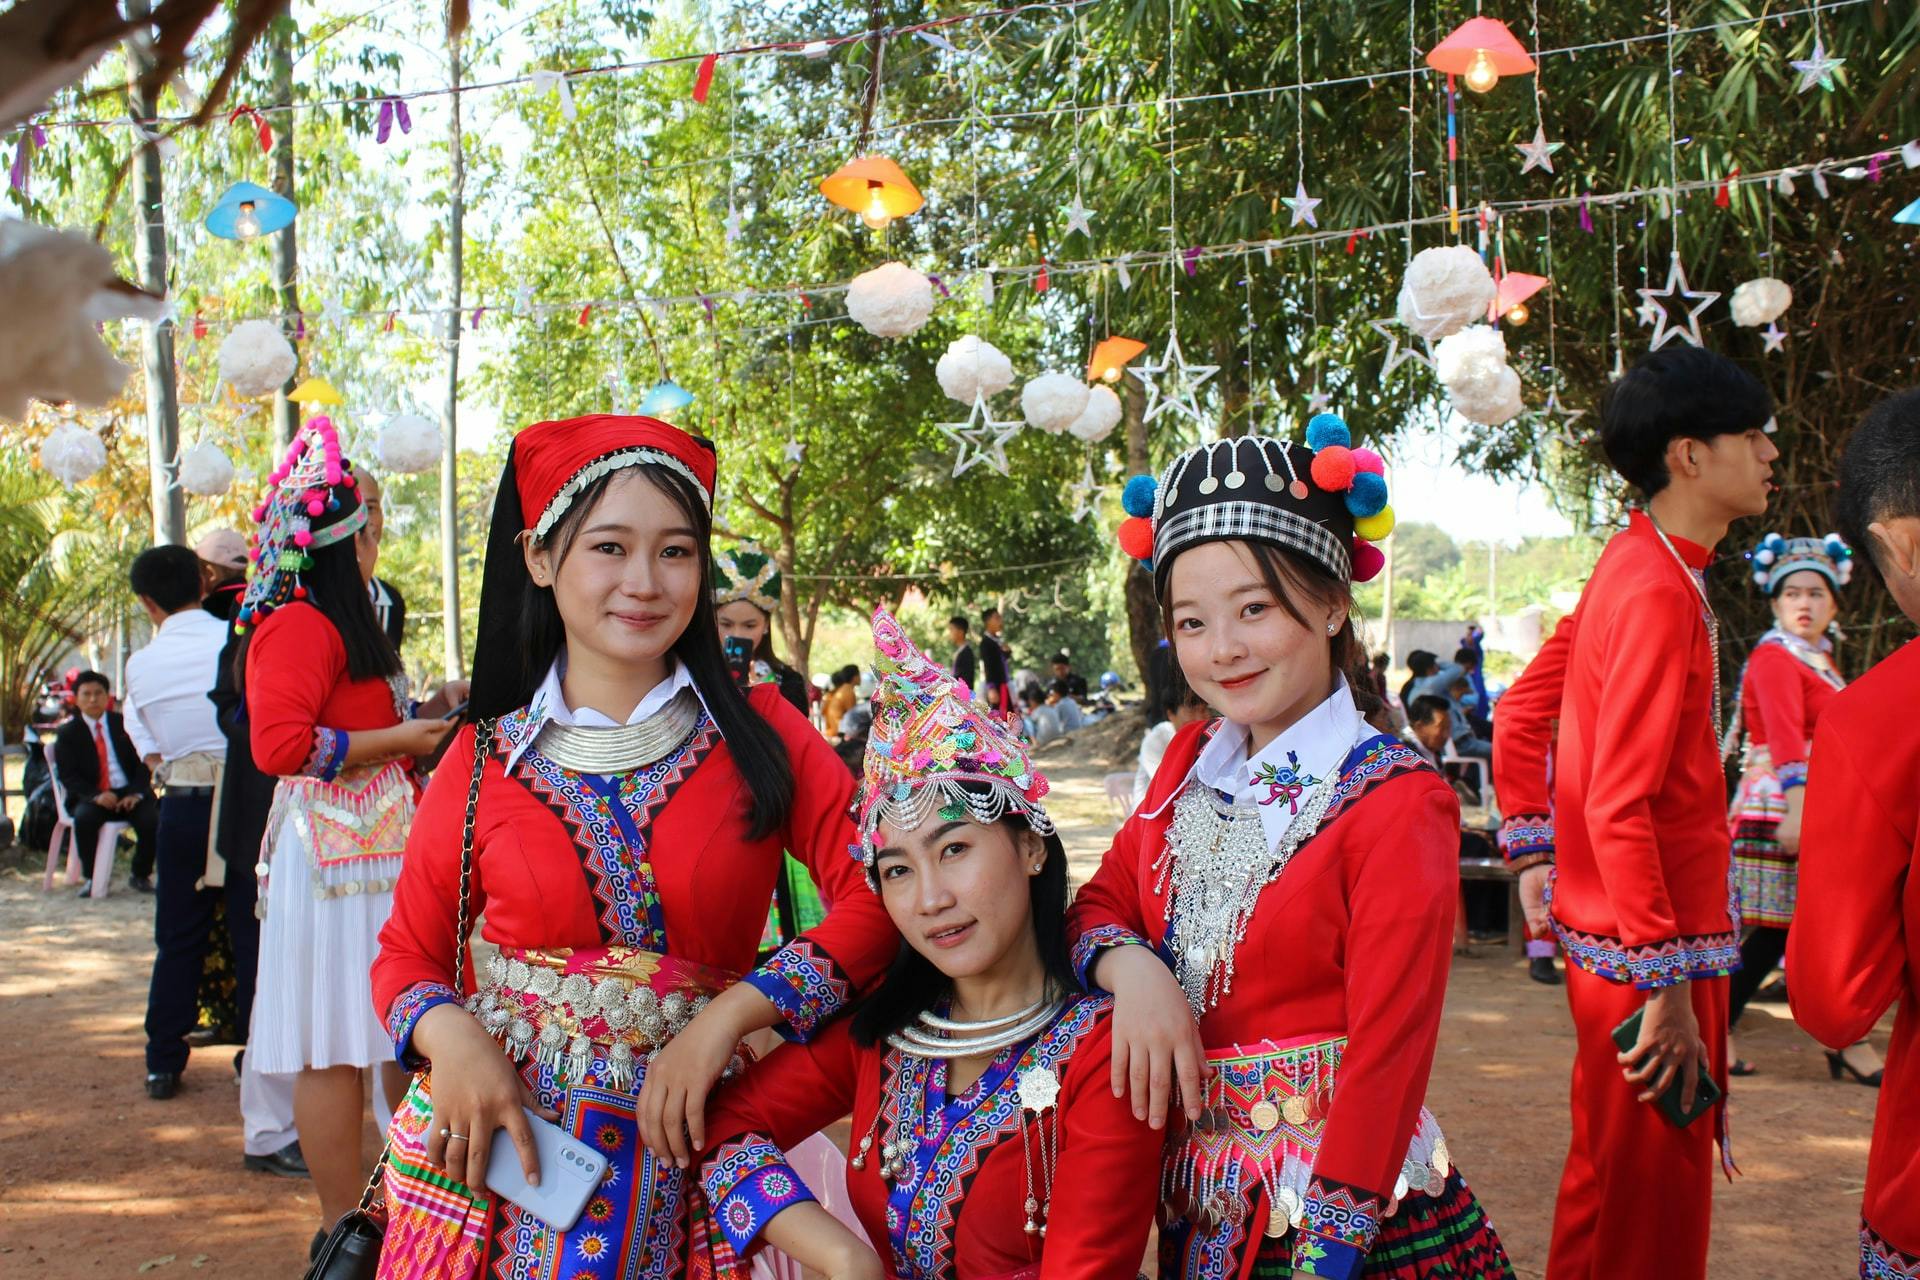 老挝舞蹈，老挝民族服饰服装，老挝美女视频素材,延时摄影视频素材下载,高清3840X2160视频素材下载,凌点视频素材网,编号:442017